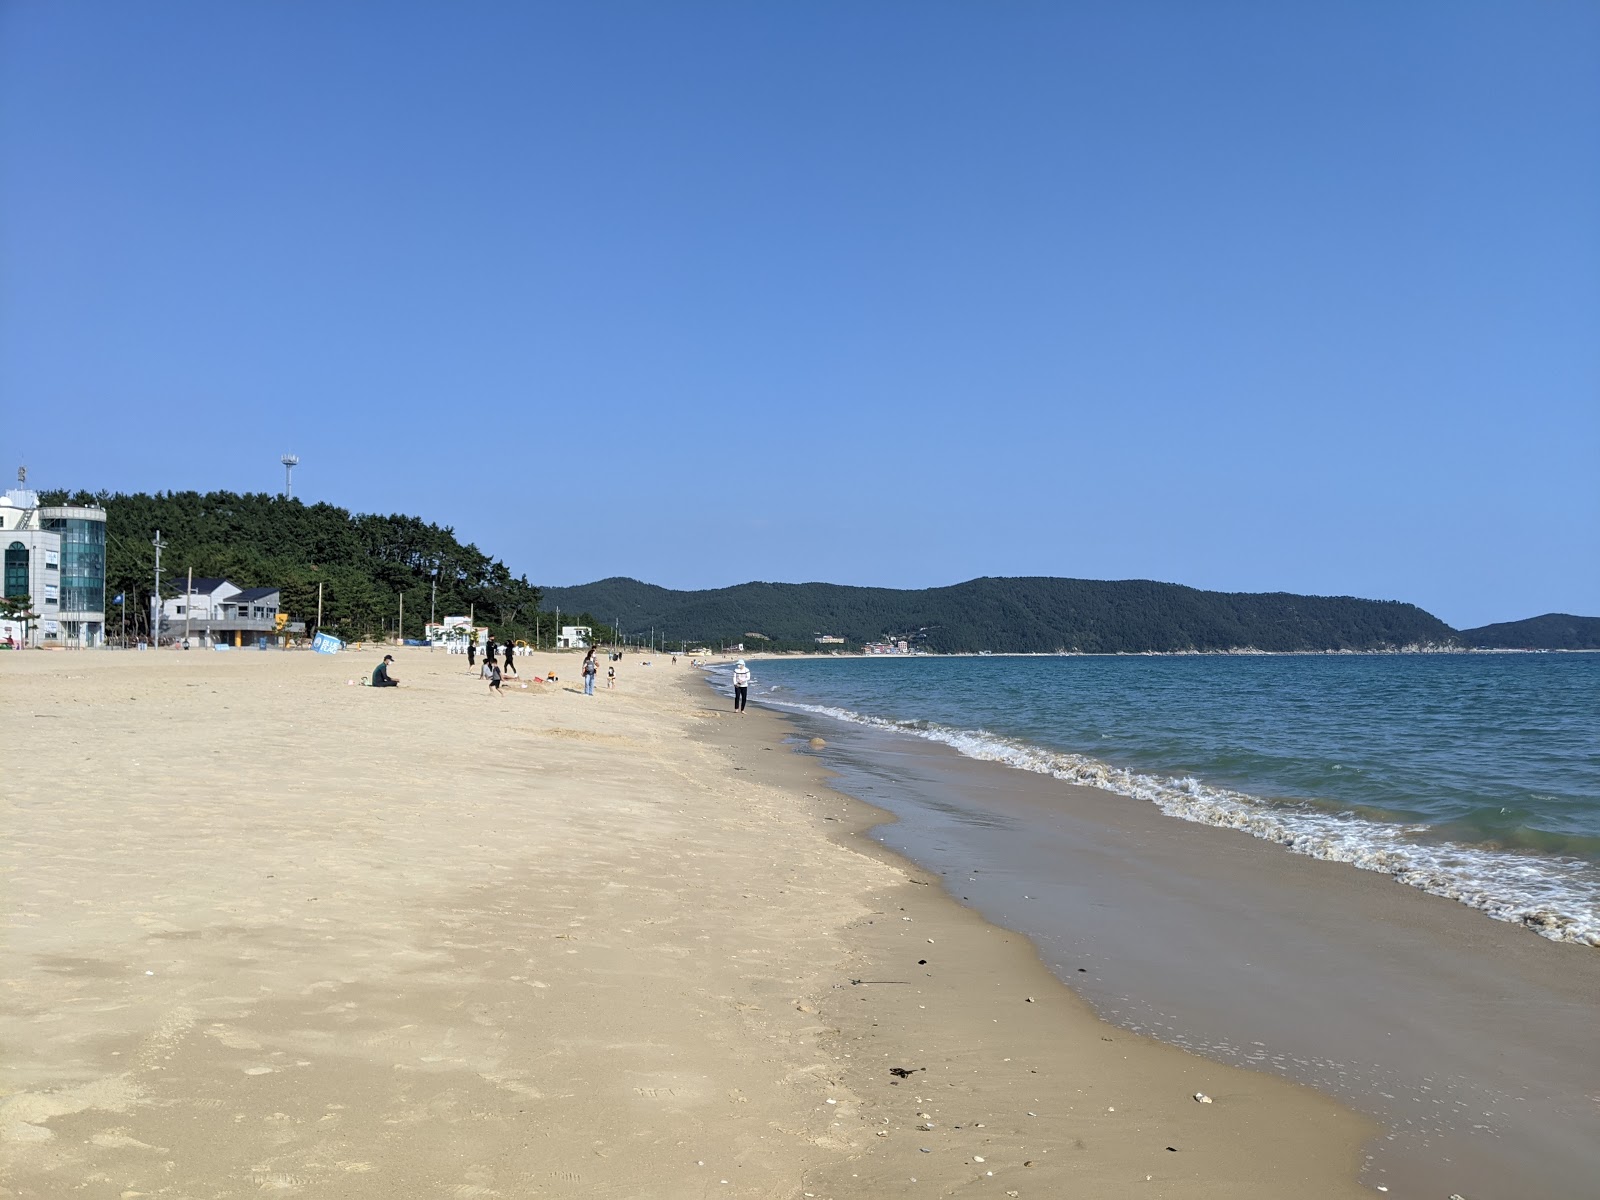 Fotografie cu Myeongsasimni Beach cu plajă spațioasă